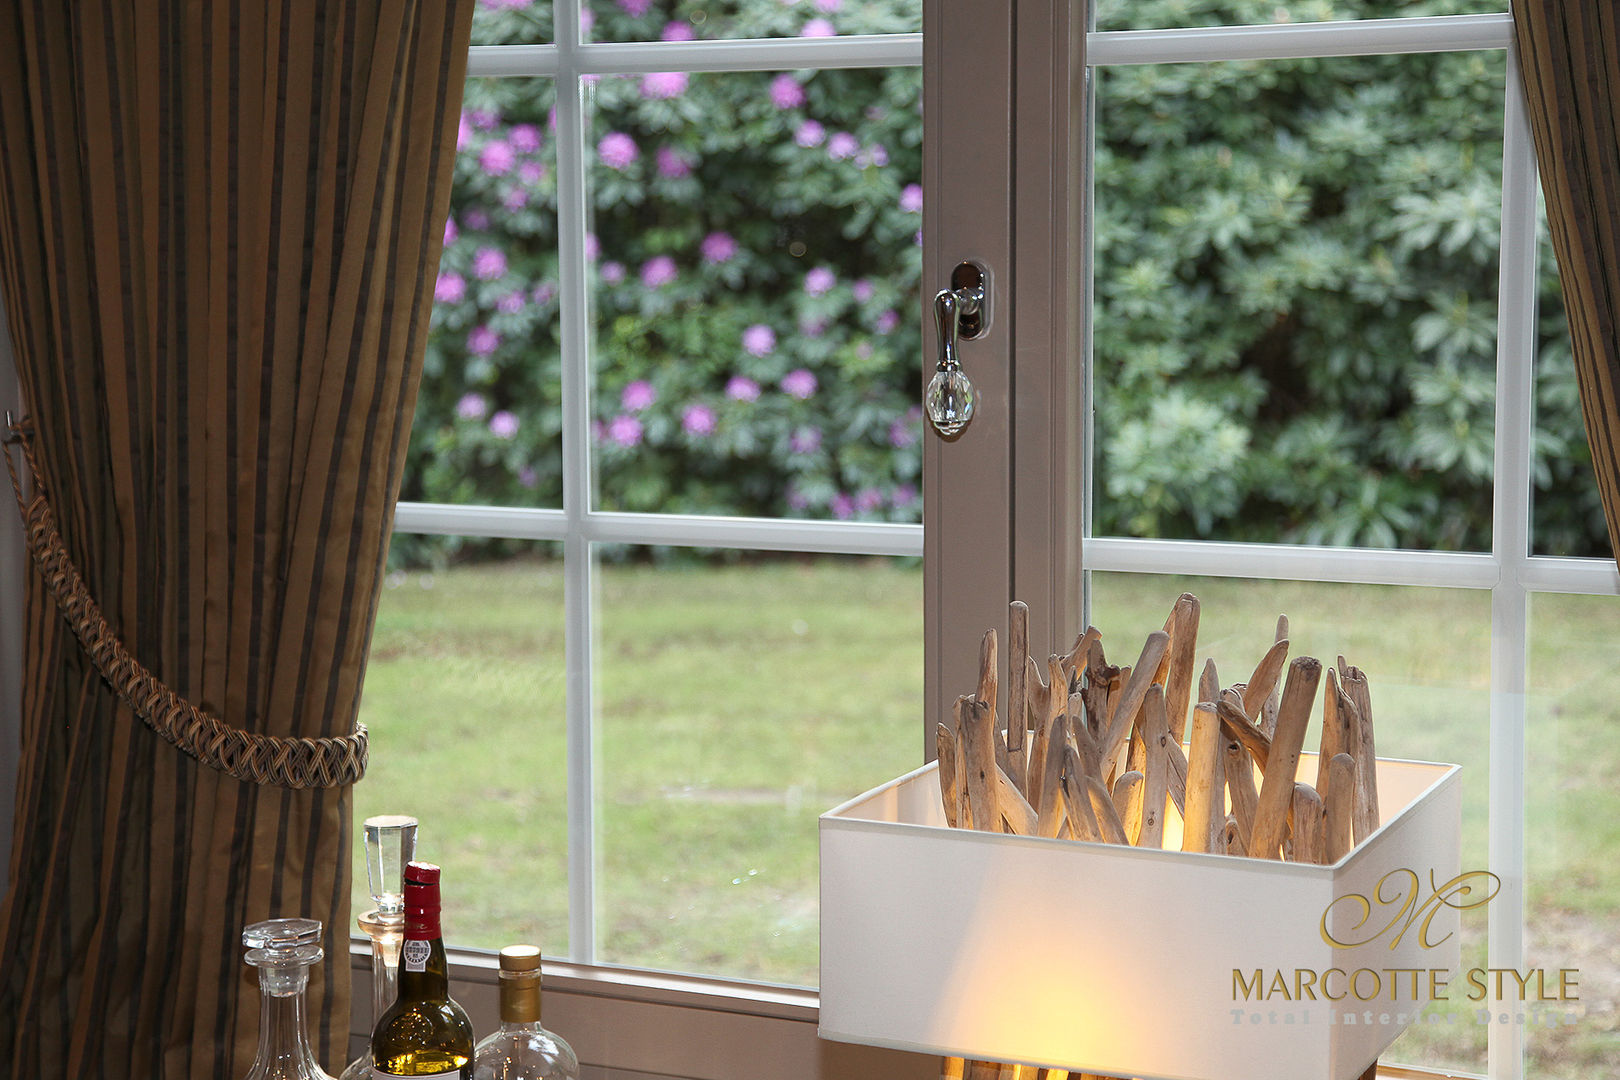 villa landelijke stijl antwerpen, Marcotte Style Marcotte Style Salas de estar clássicas